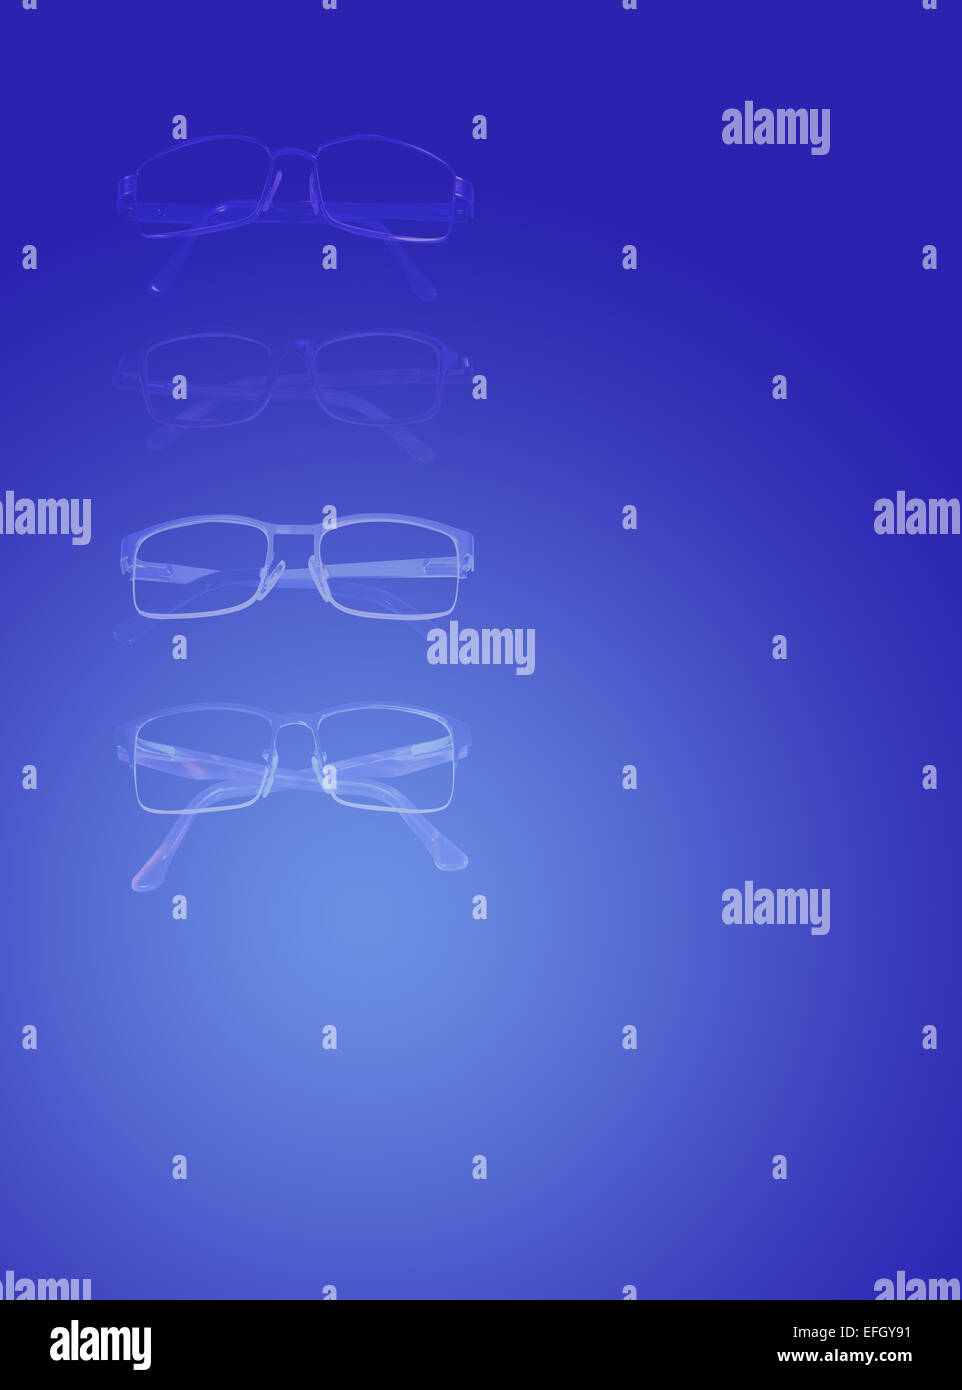 Quatre paires de lunettes en un fond bleu dégradé, conçu comme un arrière-plan pour des articles sur la vue,examens des yeux, des verres Banque D'Images